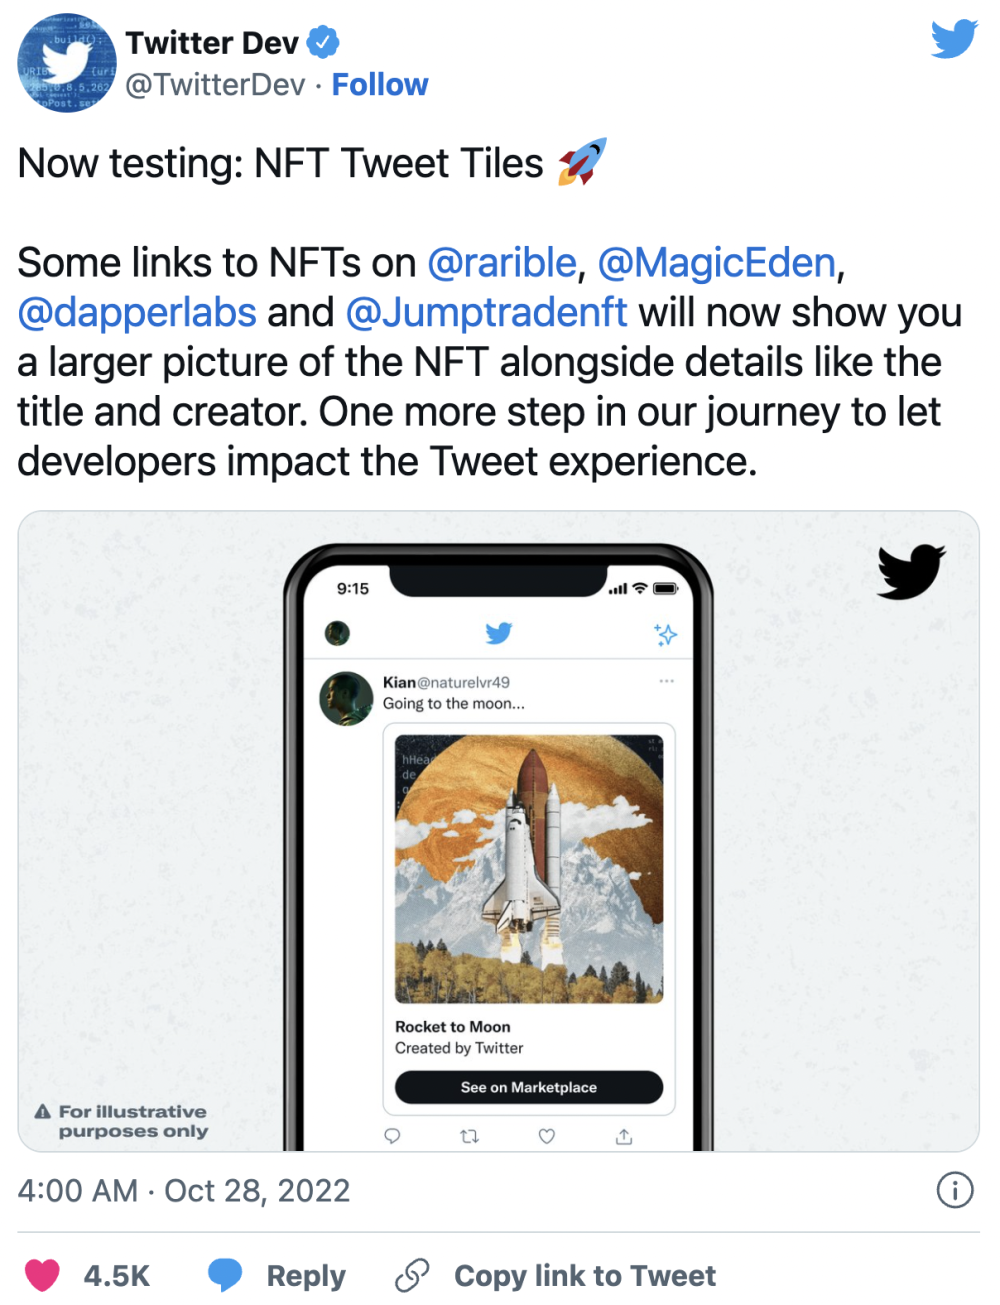 Twitter’s new NFT Tweet Tiles